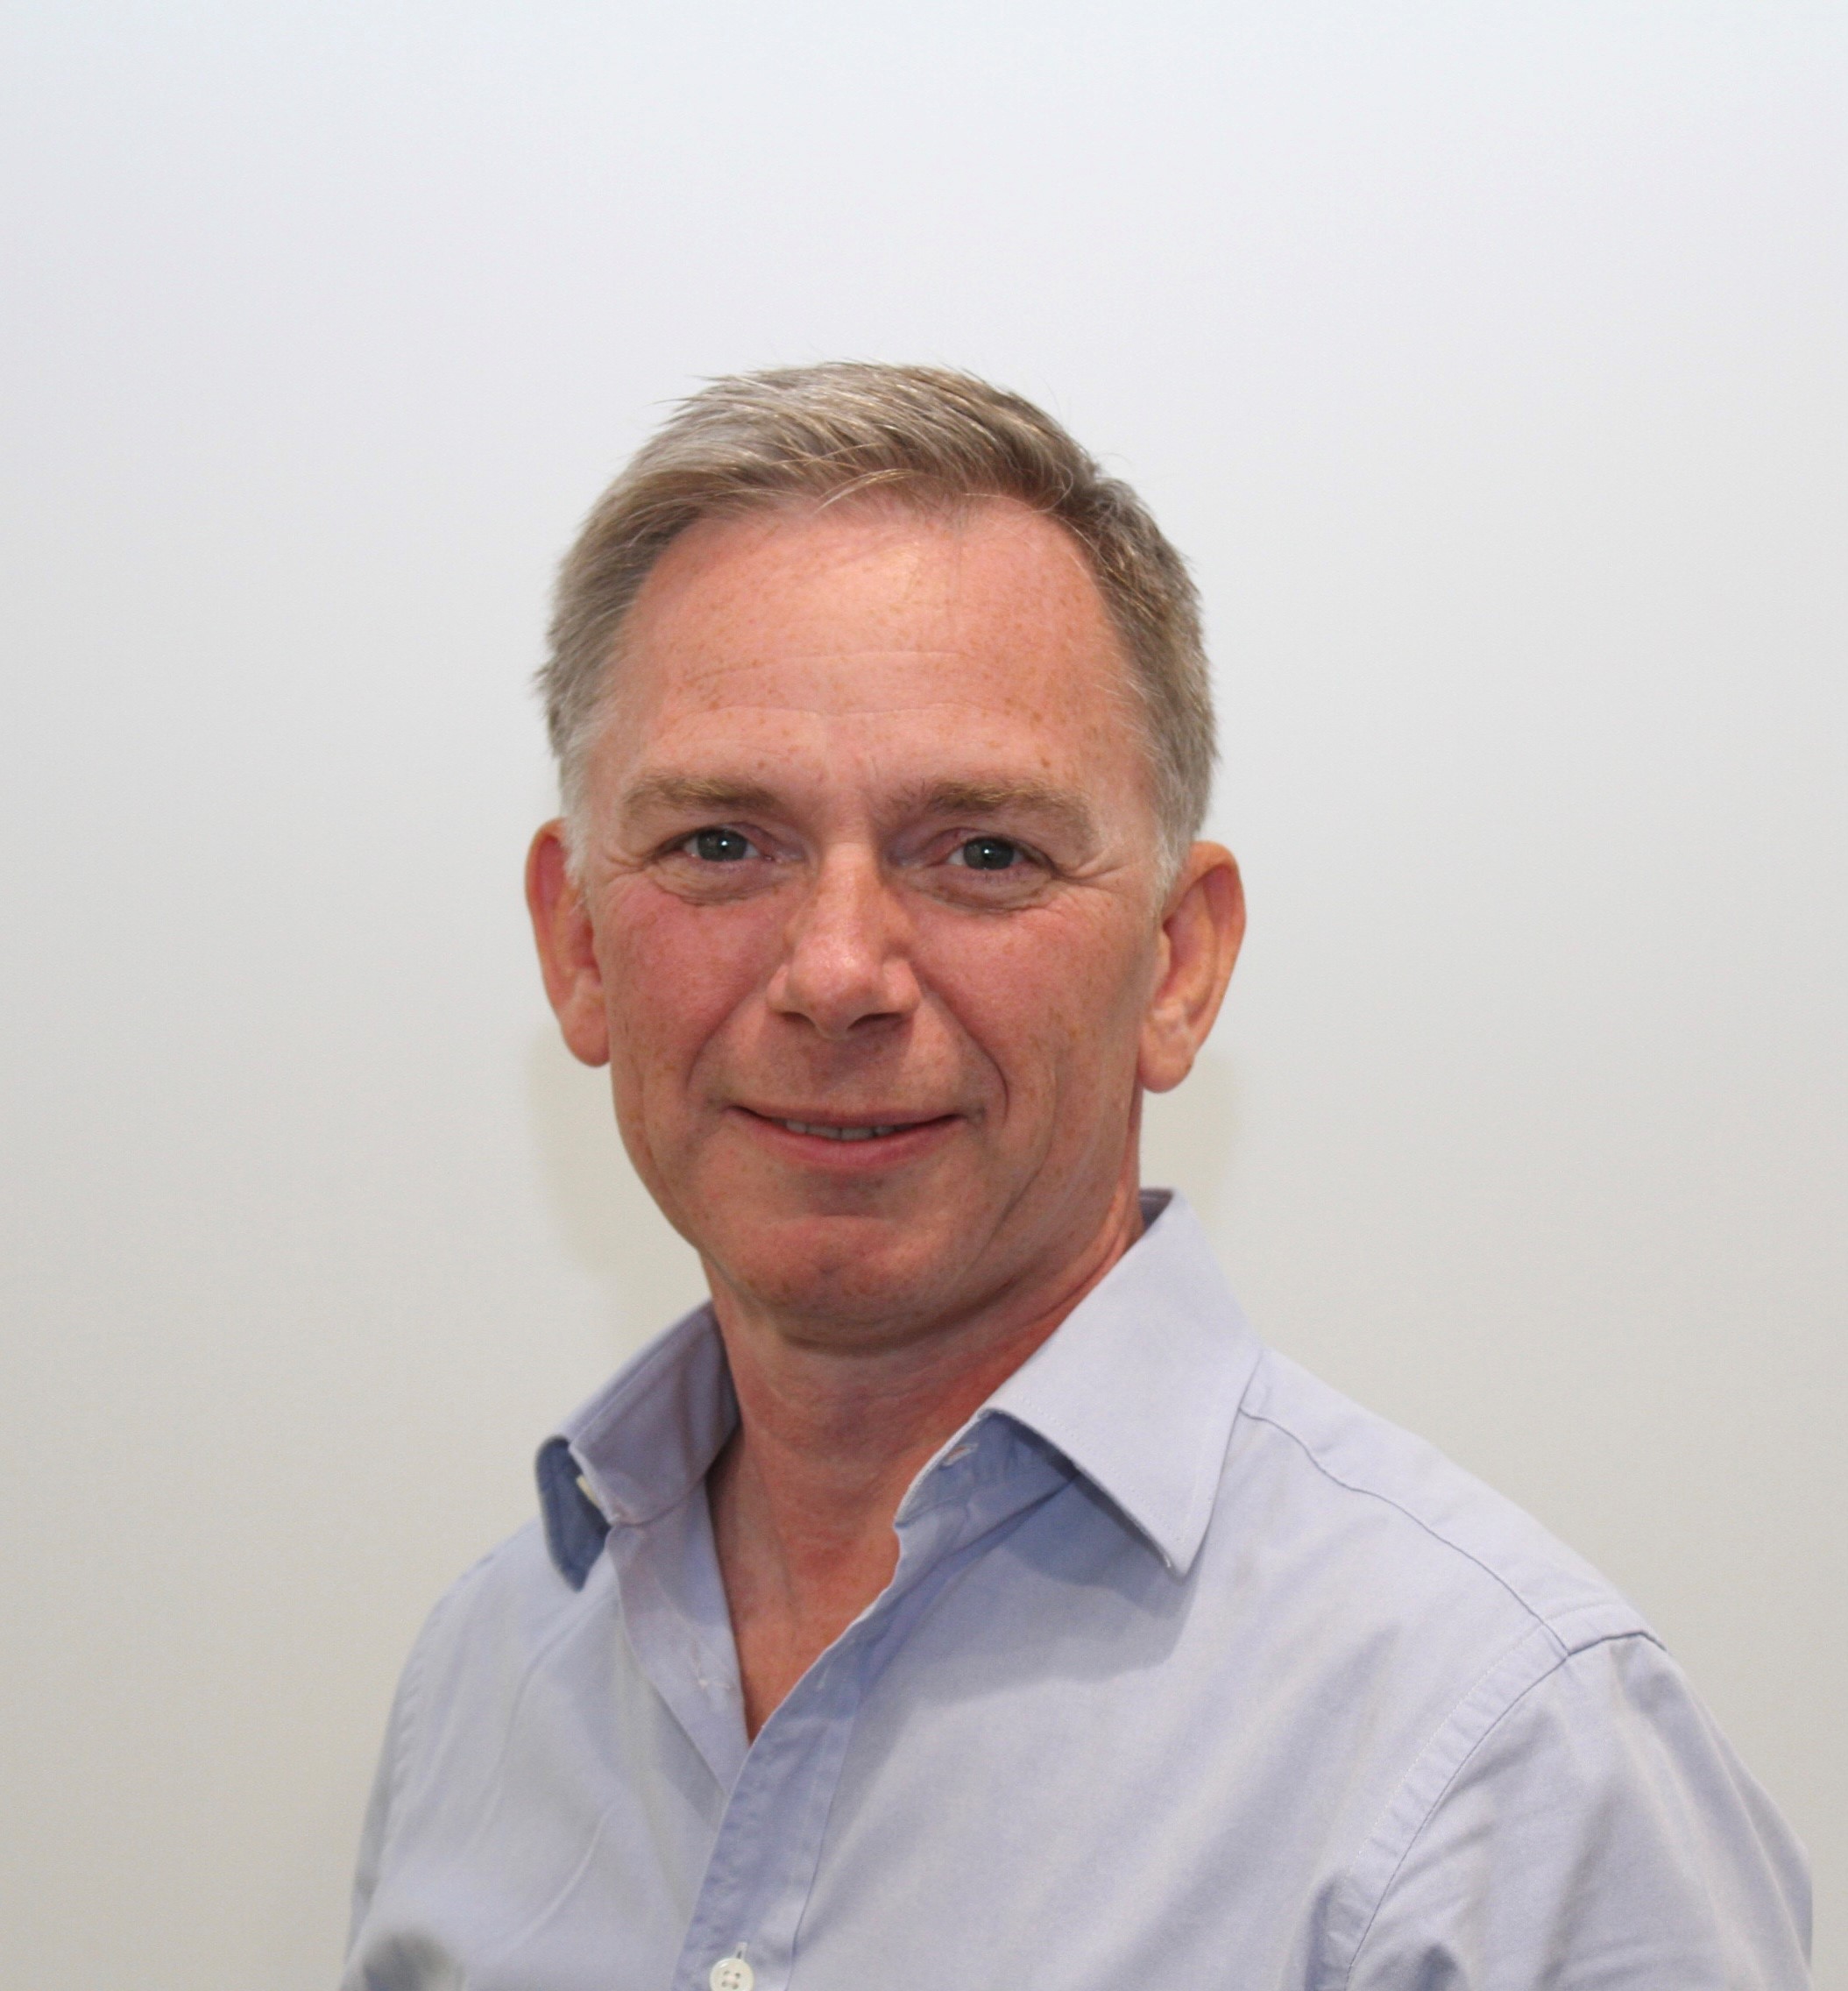 Board member David Morpeth – Chair